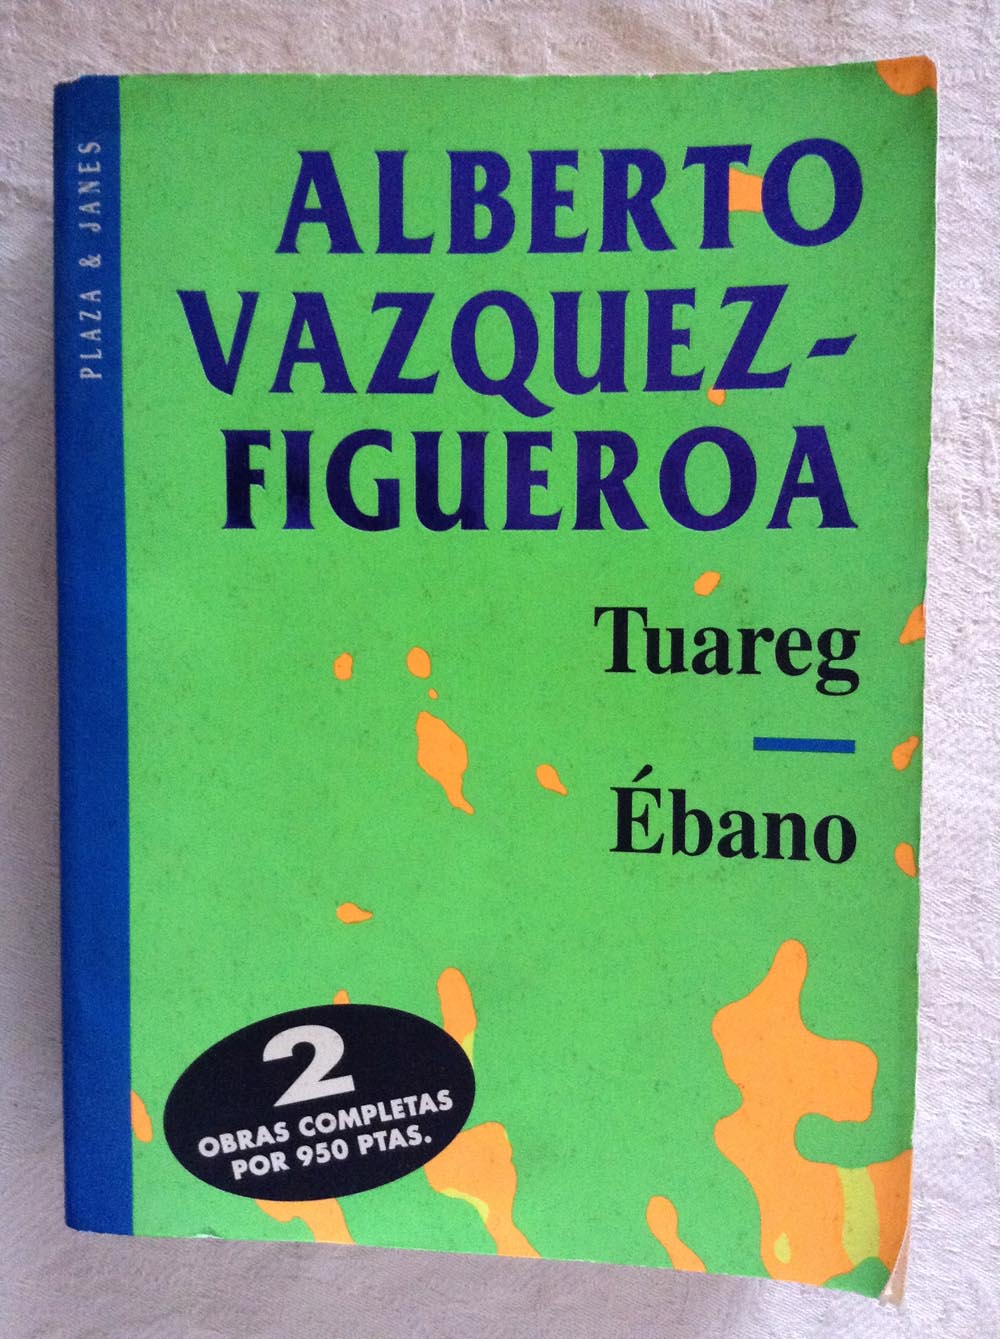 trama Activar gatito Tuareg. Ébano | Alberto Vázquez-Figueroa Libros de segunda mano baratos -  Libros Ambigú - Libros usados